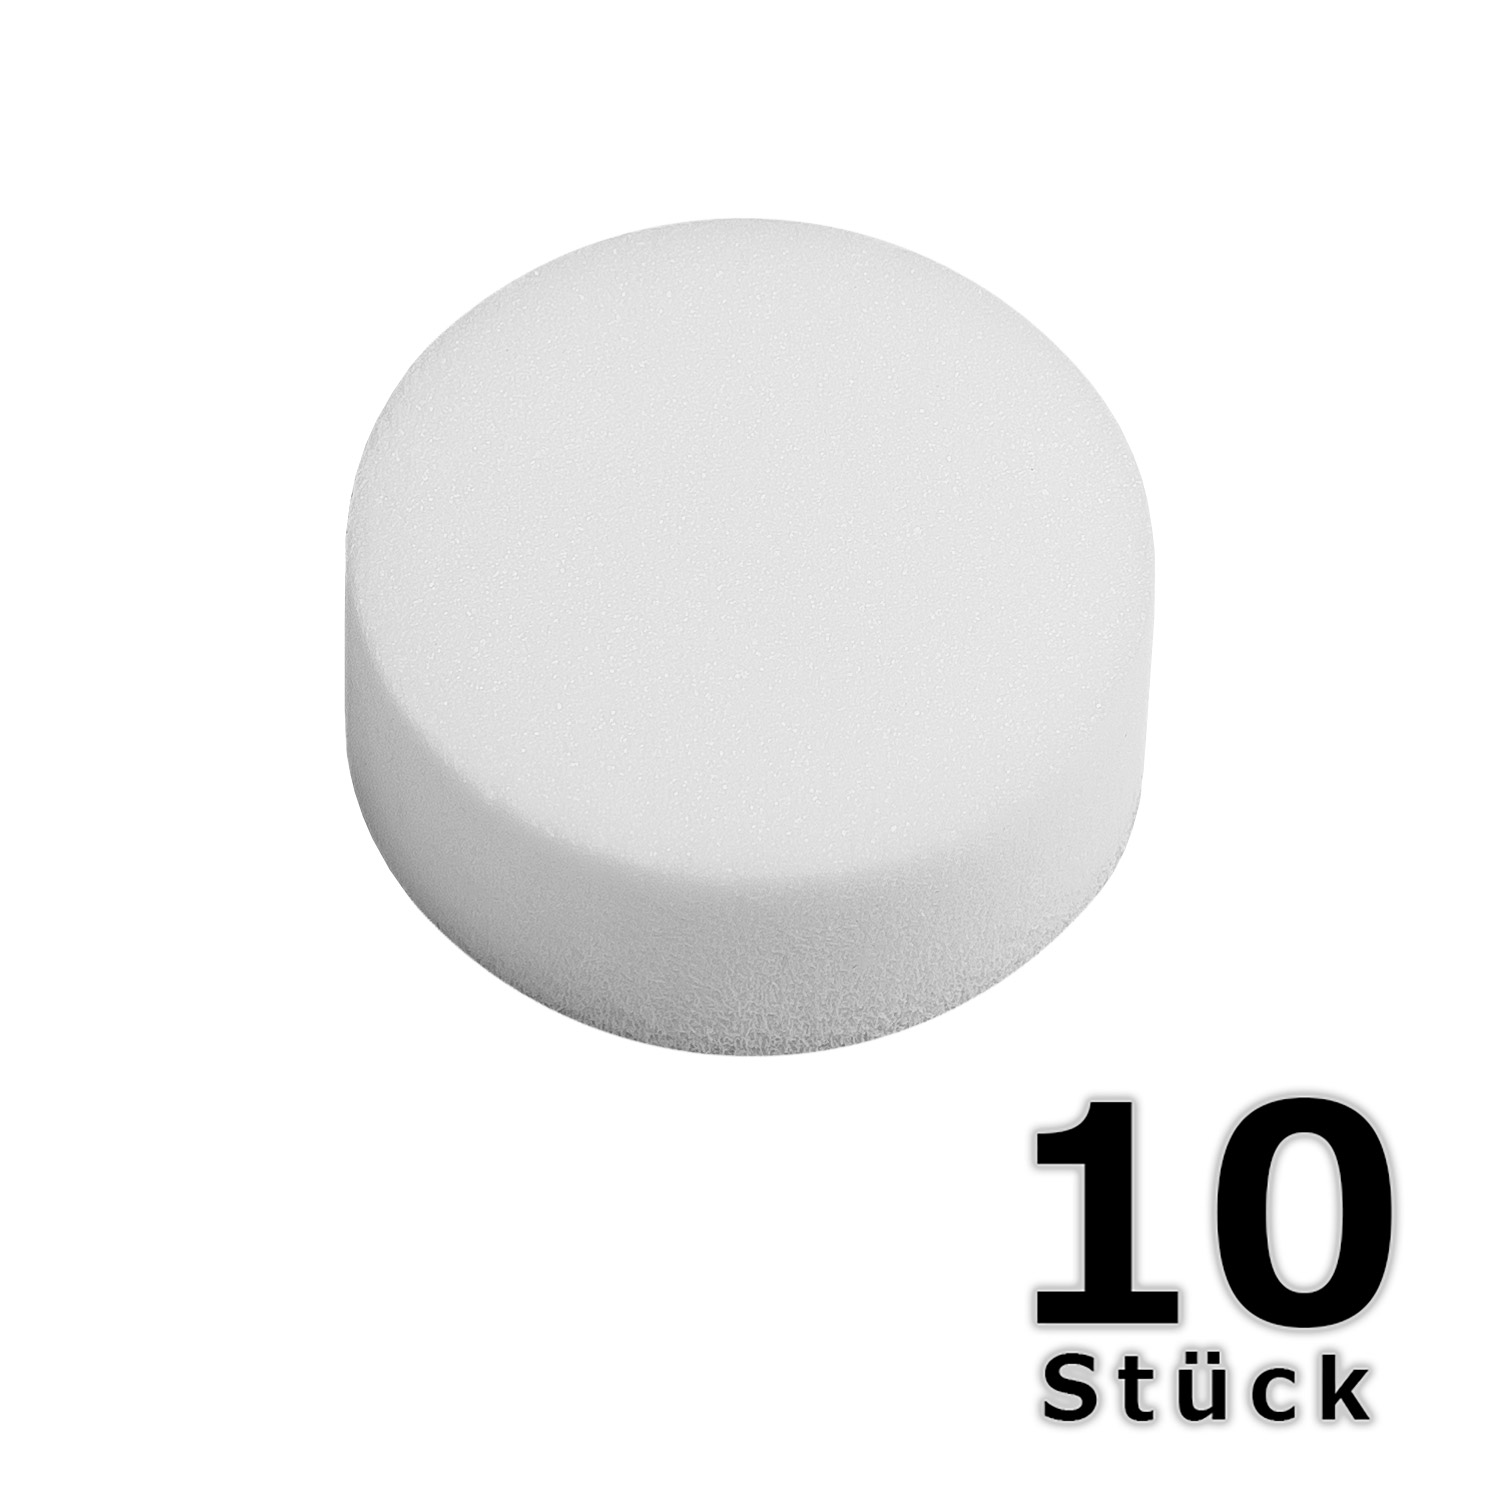 10 Abstandspuffer - Ø 20 mm Höhe 8mm Abstandshalter in Weiß aus